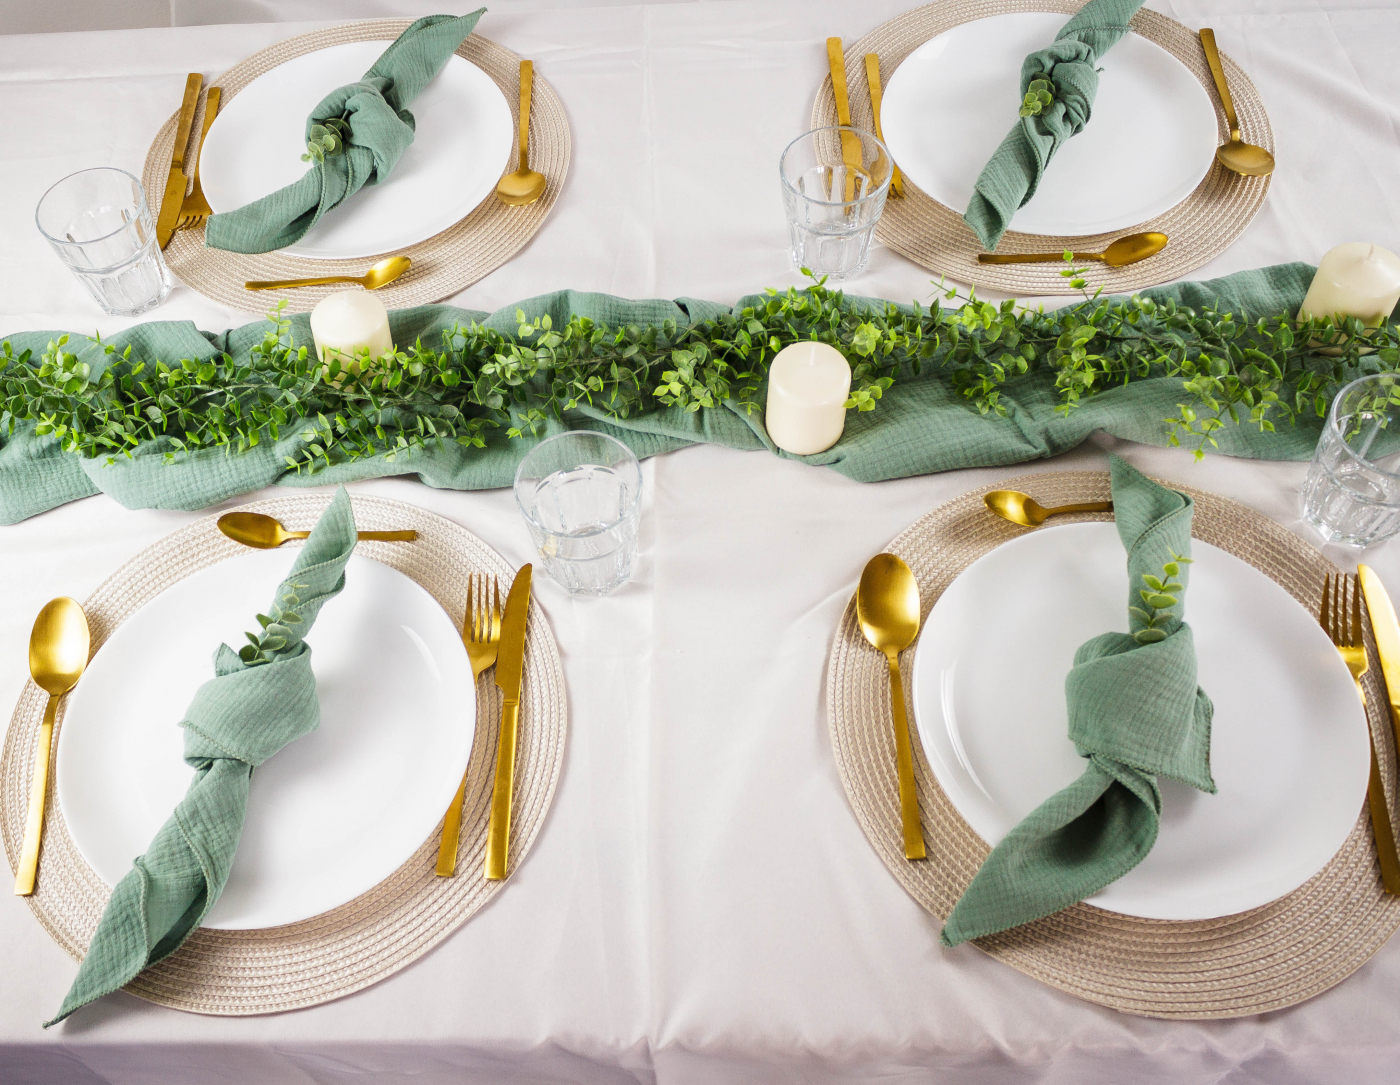 Tischgedeck mit goldenen Bestecken, grünen Servietten und blumiger Tischdekoration auf weißer Tischdecke.